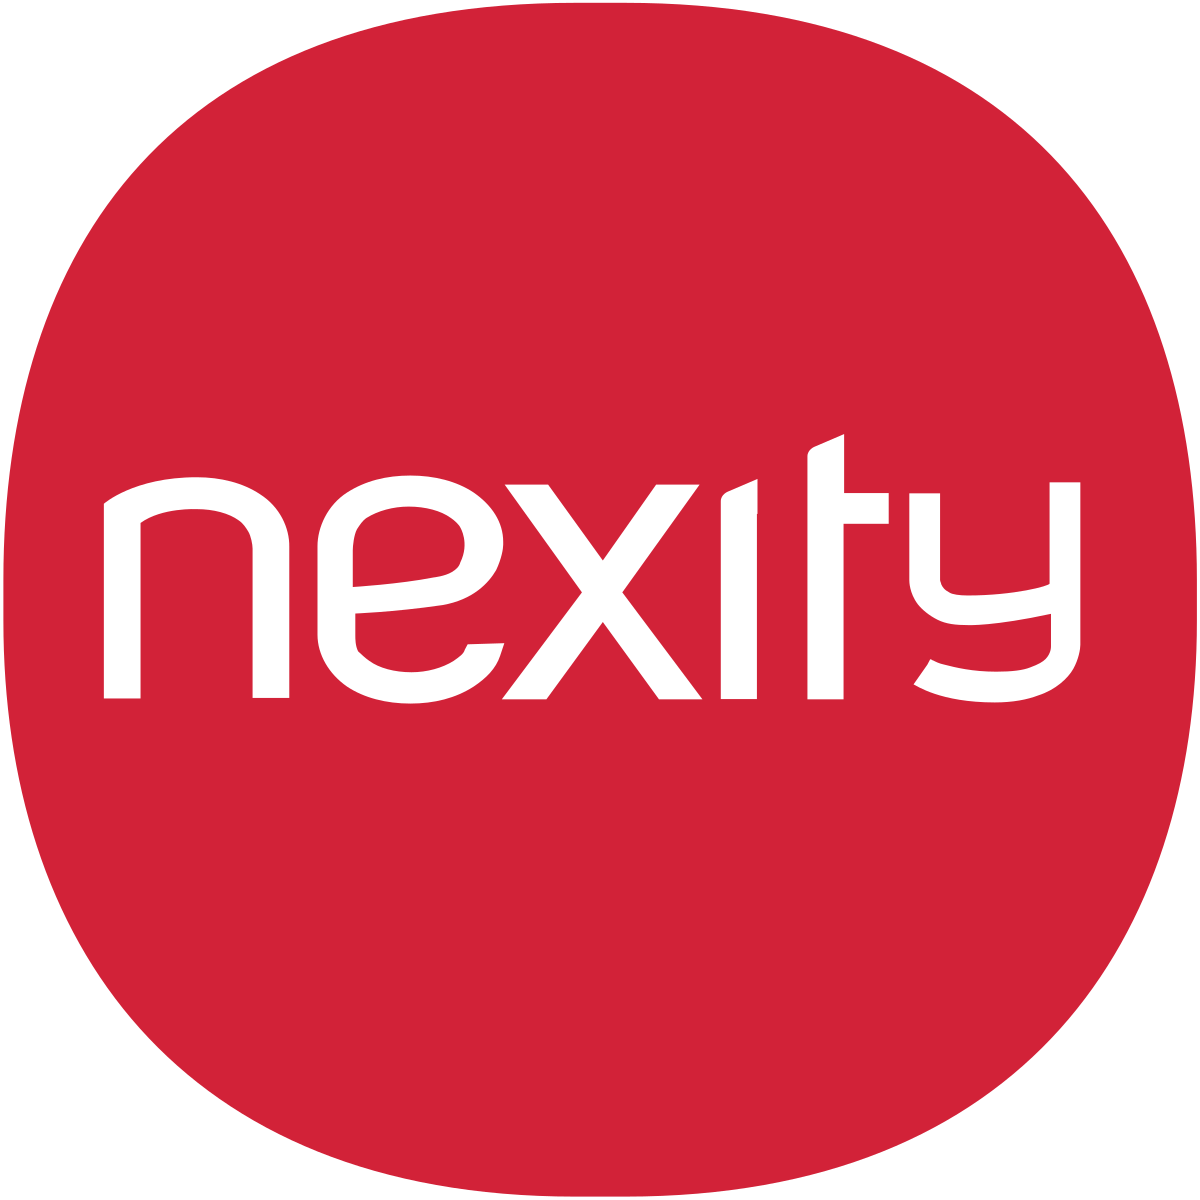 logo Nexity